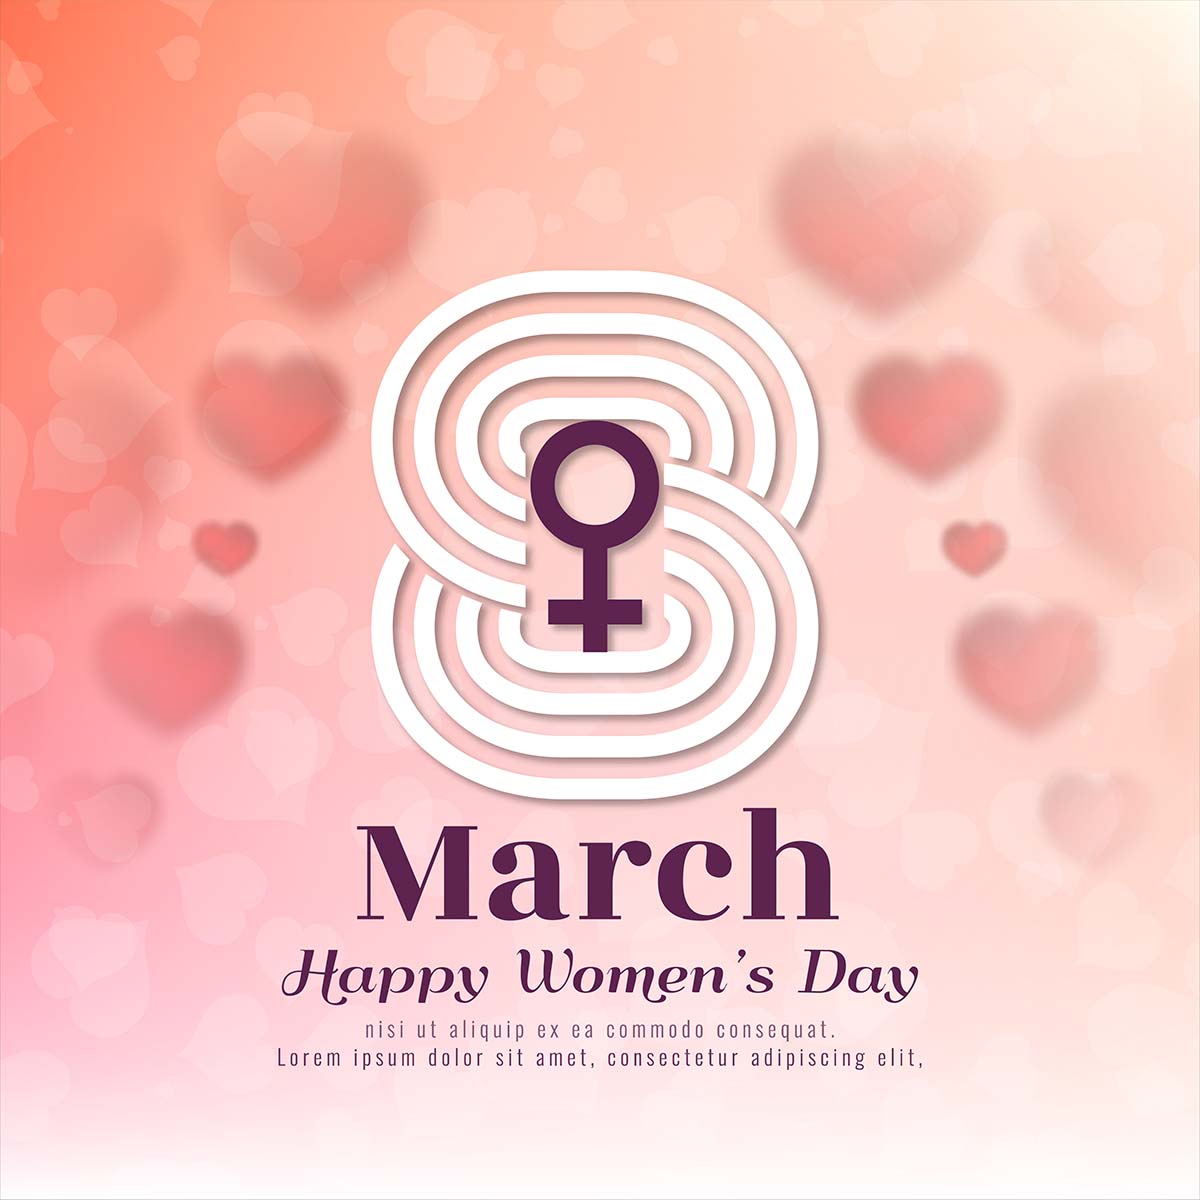 3月8日象征妇女节快乐一天背景矢量8-march-symbol-happy-women-s-day-background